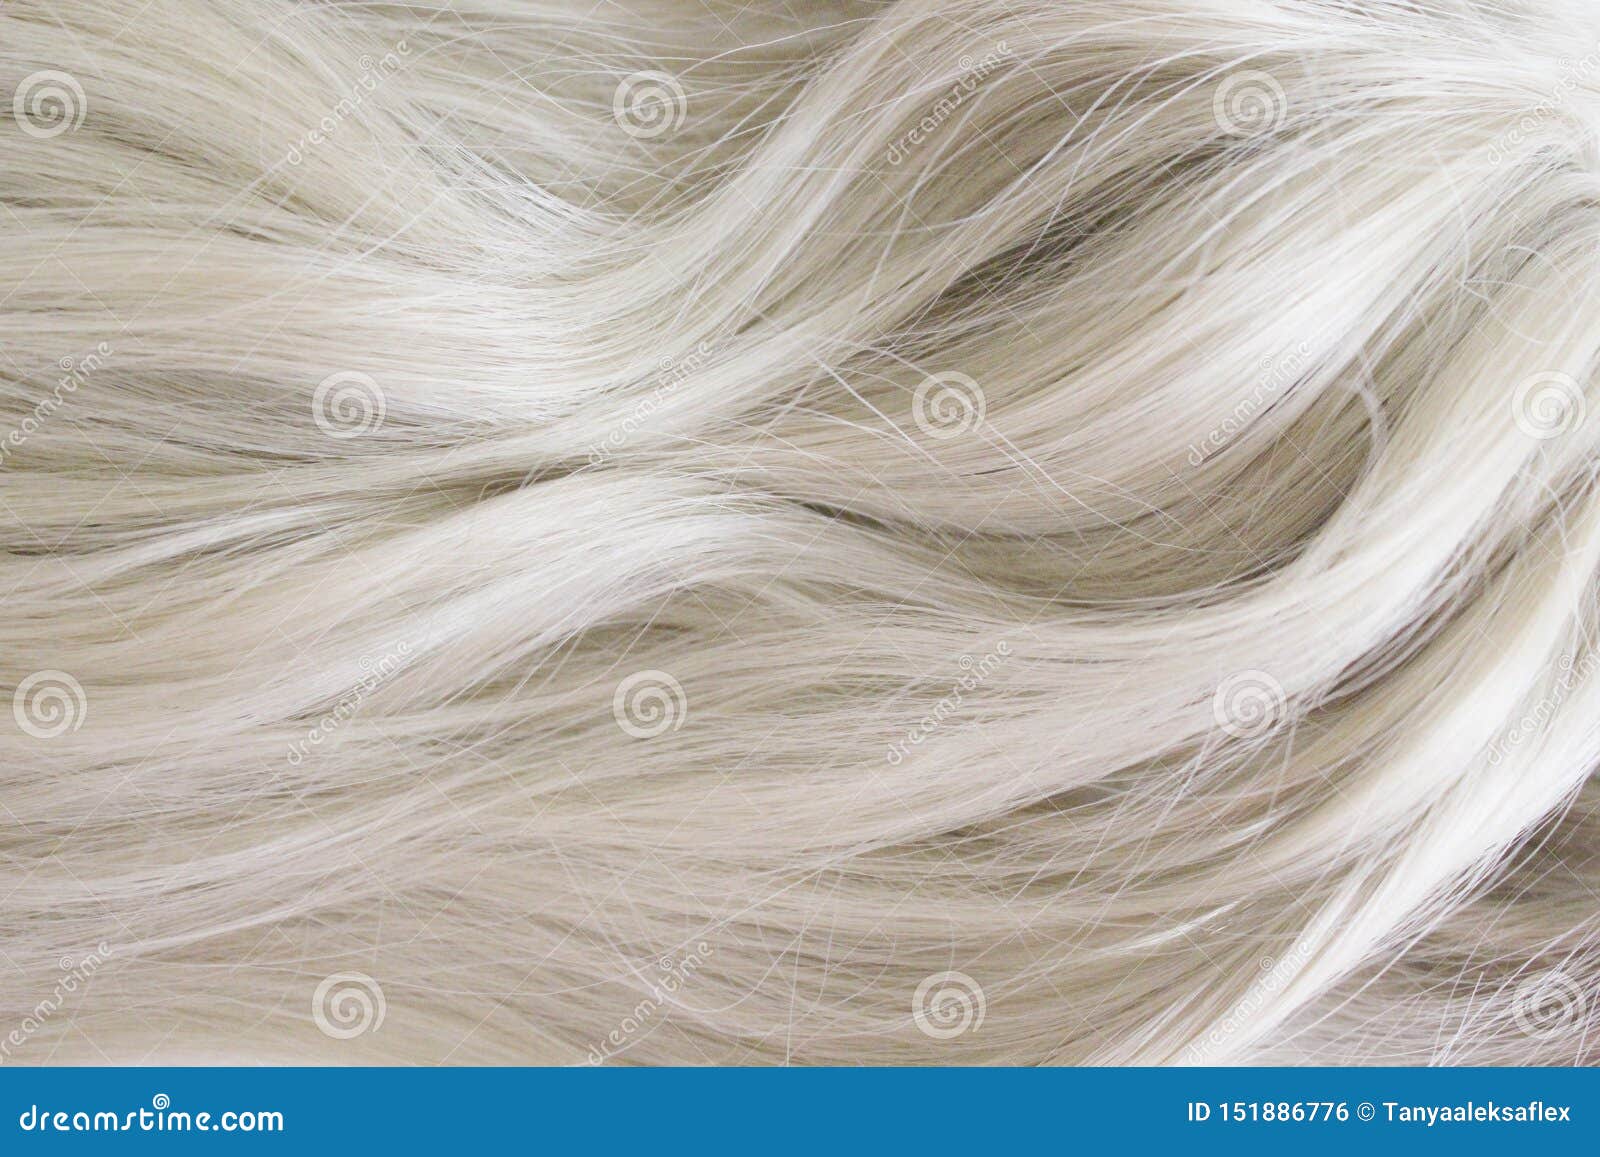 Красивые Светлые Волосы Фото